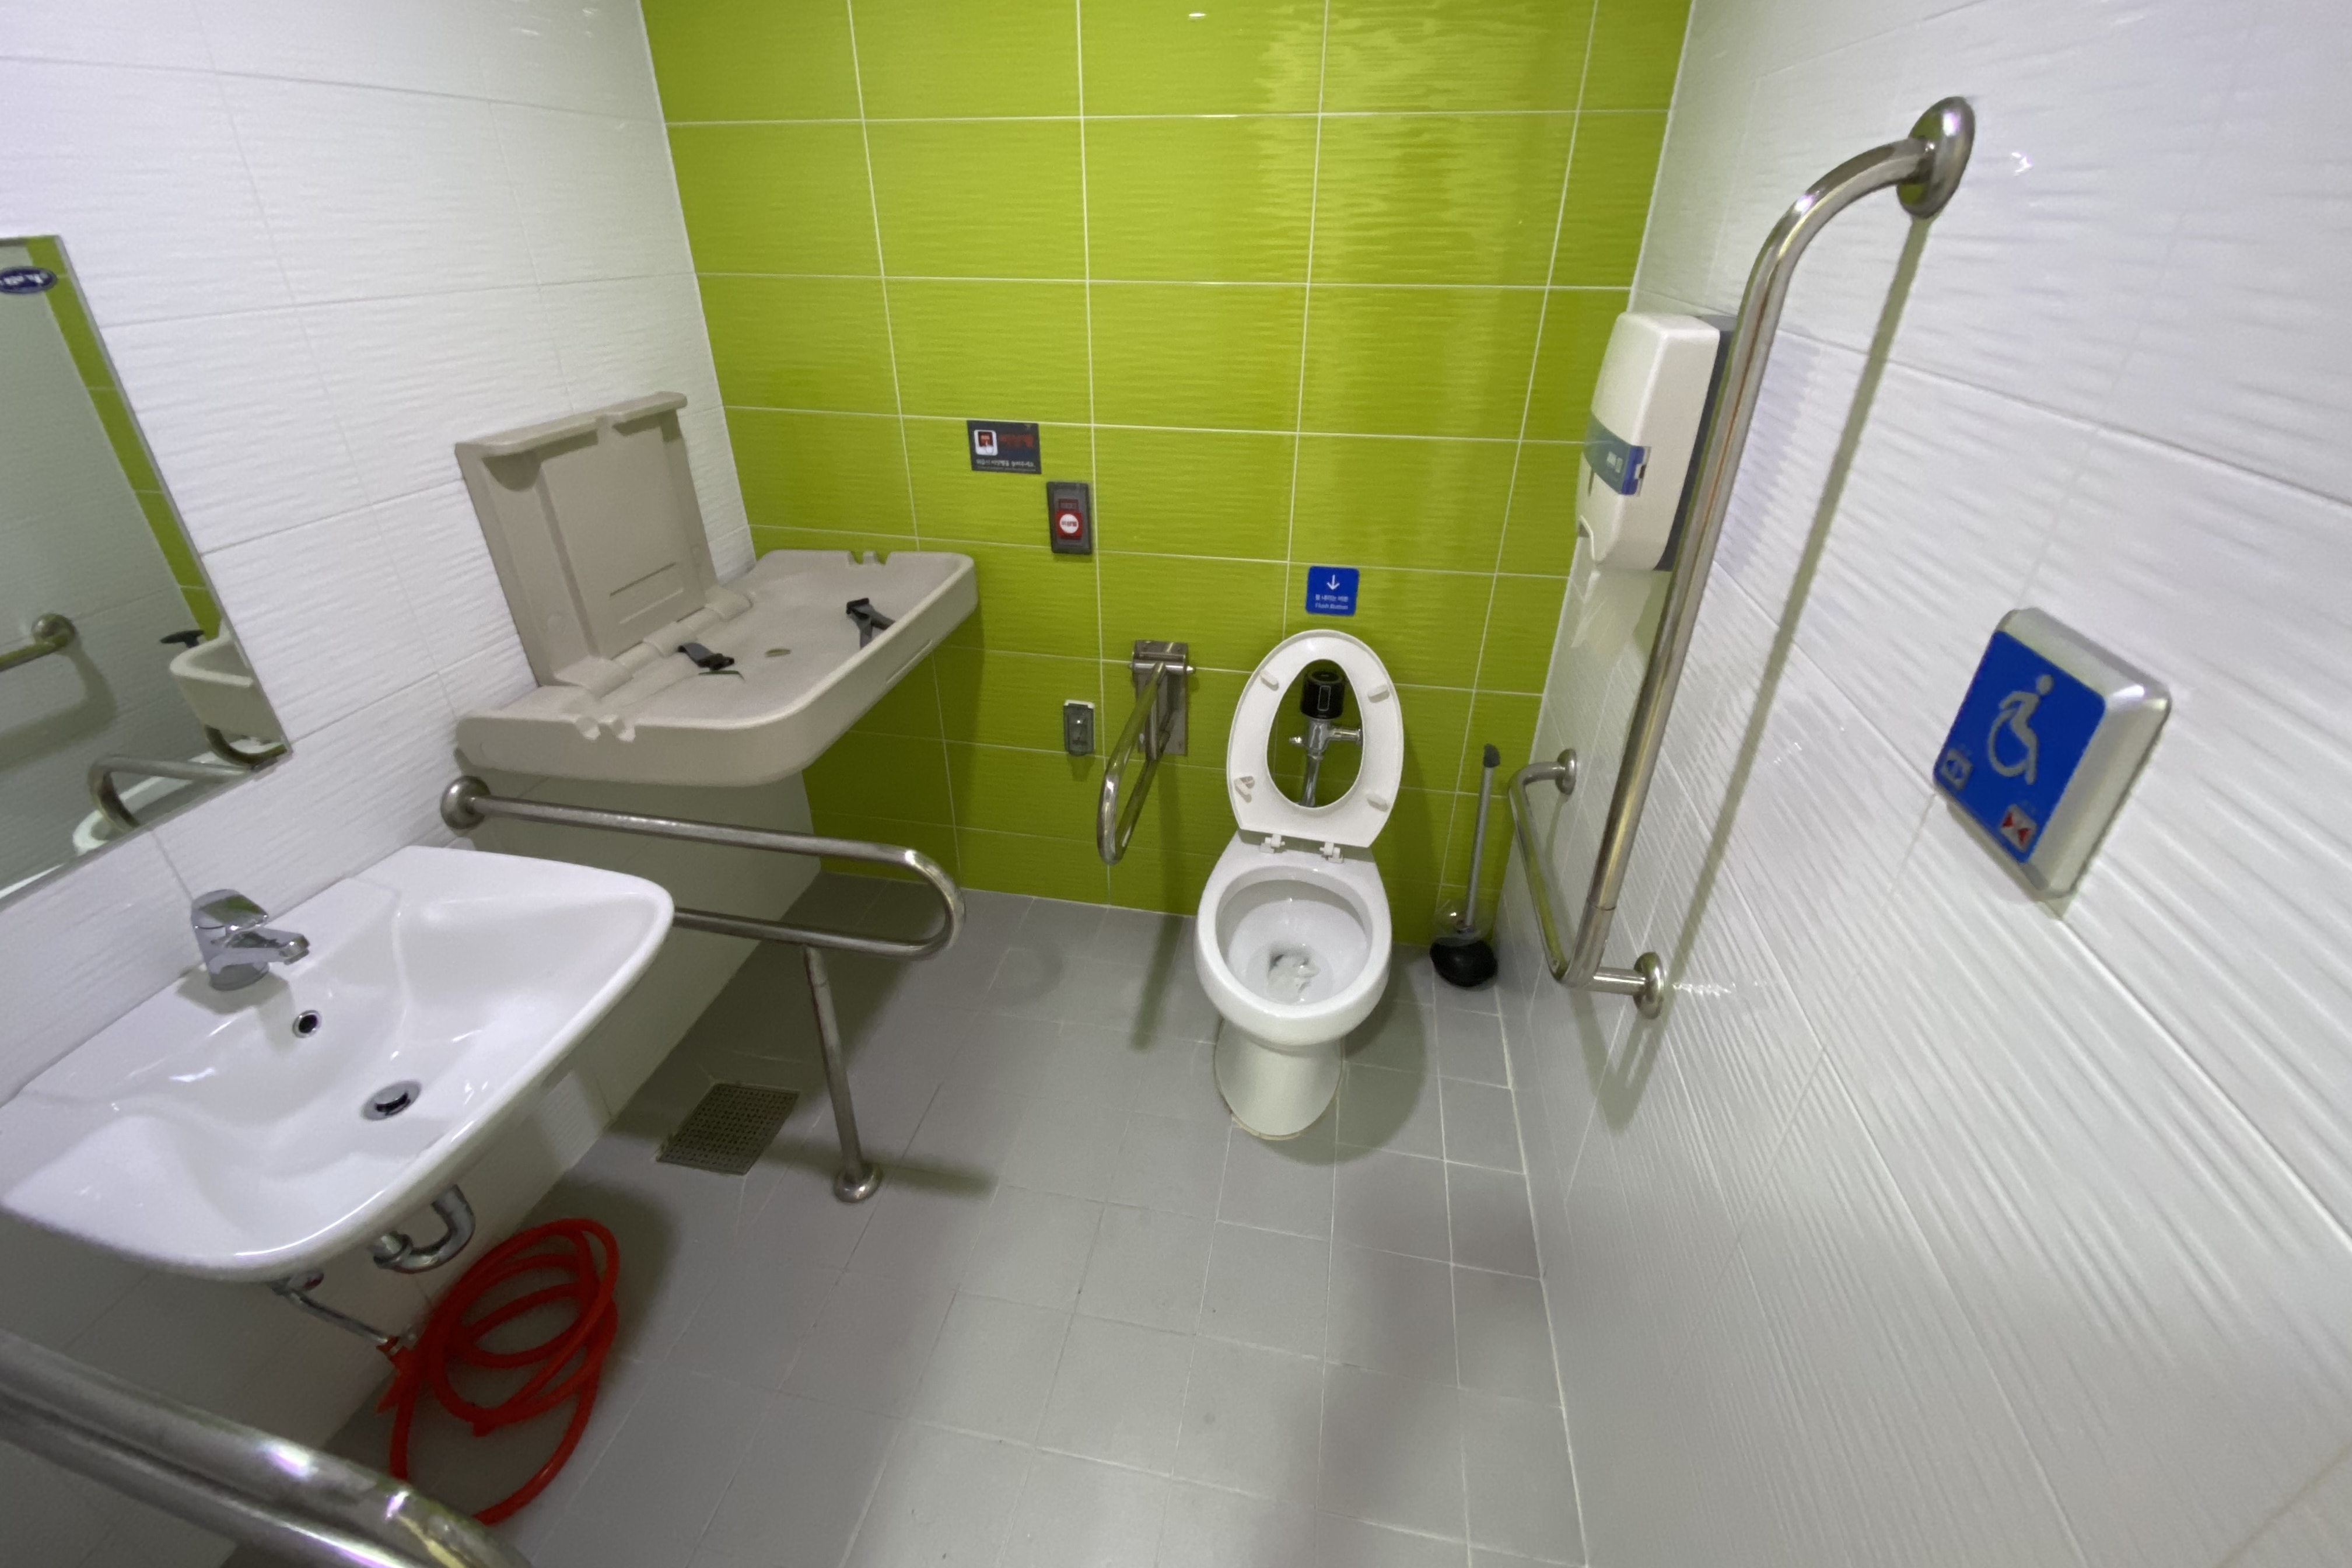 장애인 화장실0 : 넓은 공간의 서울상상나라 장애인화장실